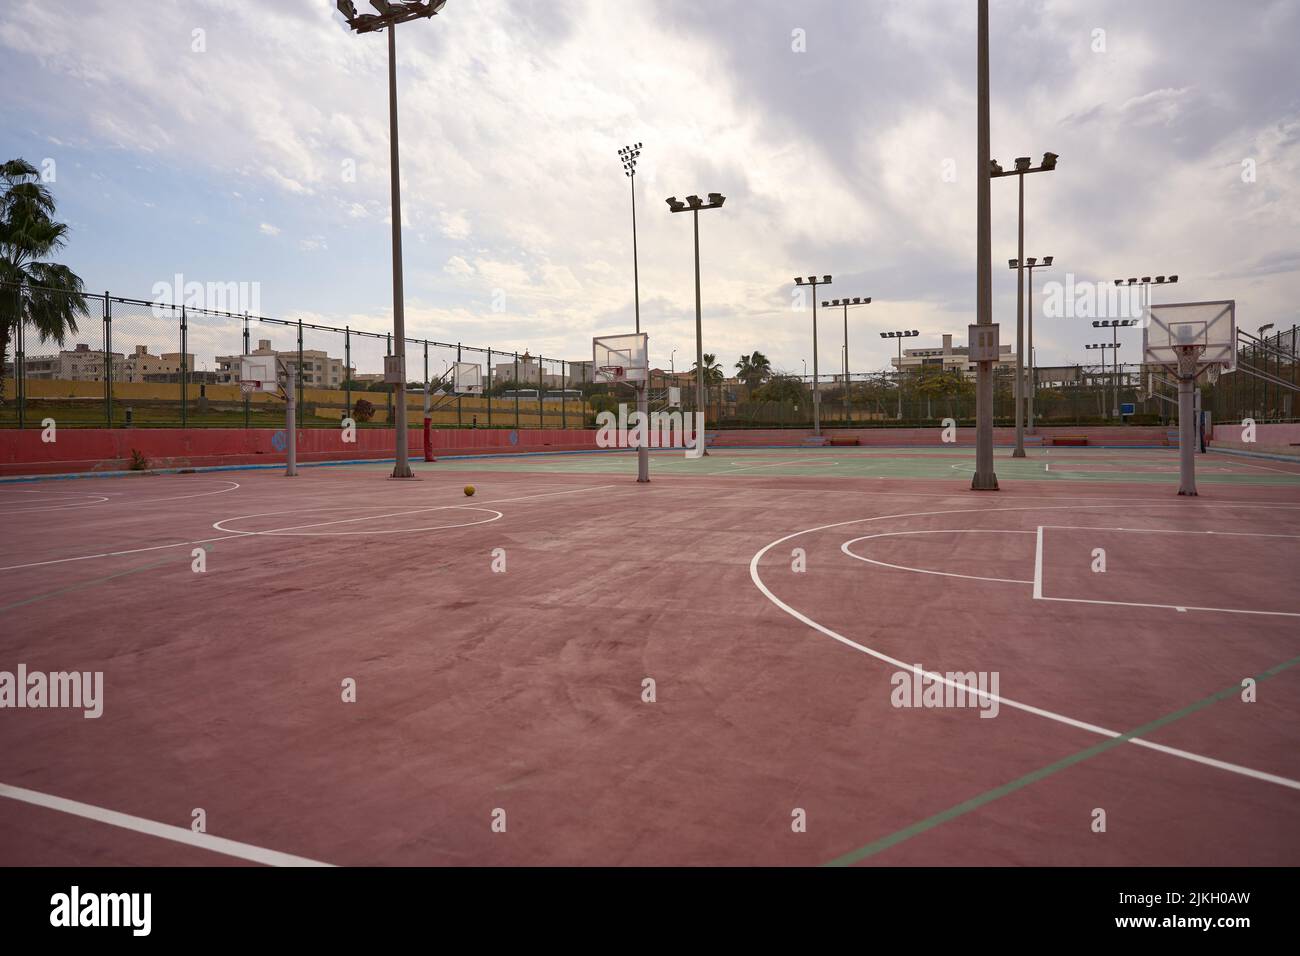 Ein schöner Blick auf den Platz mit Basketballkörben und Laternenpfosten Stockfoto